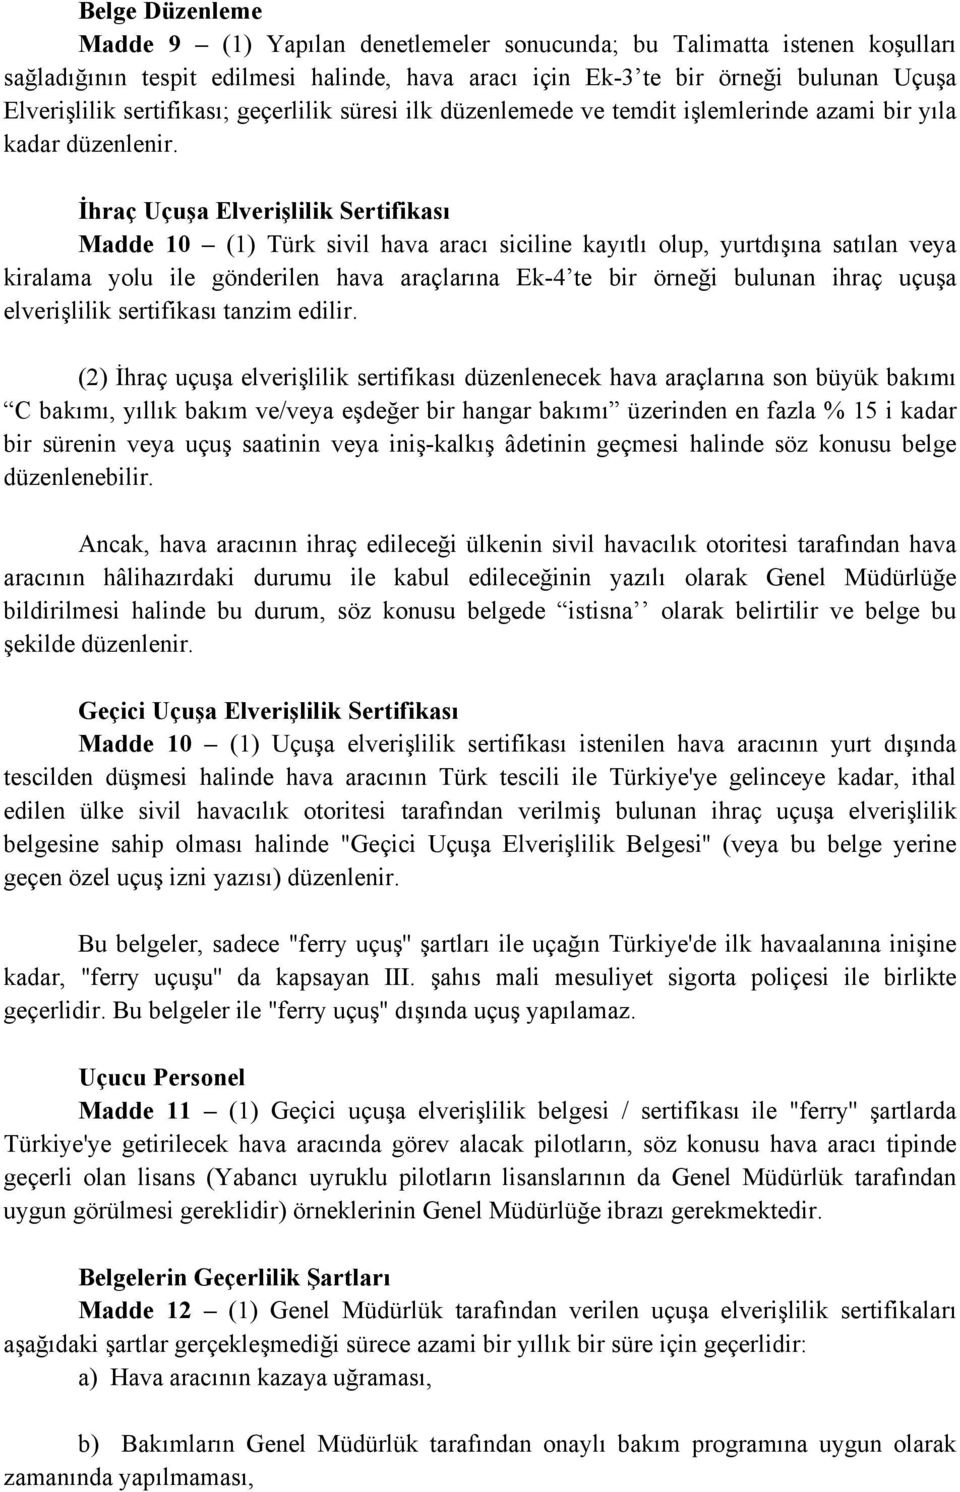 İhraç Uçuşa Elverişlilik Sertifikası Madde 10 (1) Türk sivil hava aracı siciline kayıtlı olup, yurtdışına satılan veya kiralama yolu ile gönderilen hava araçlarına Ek-4 te bir örneği bulunan ihraç